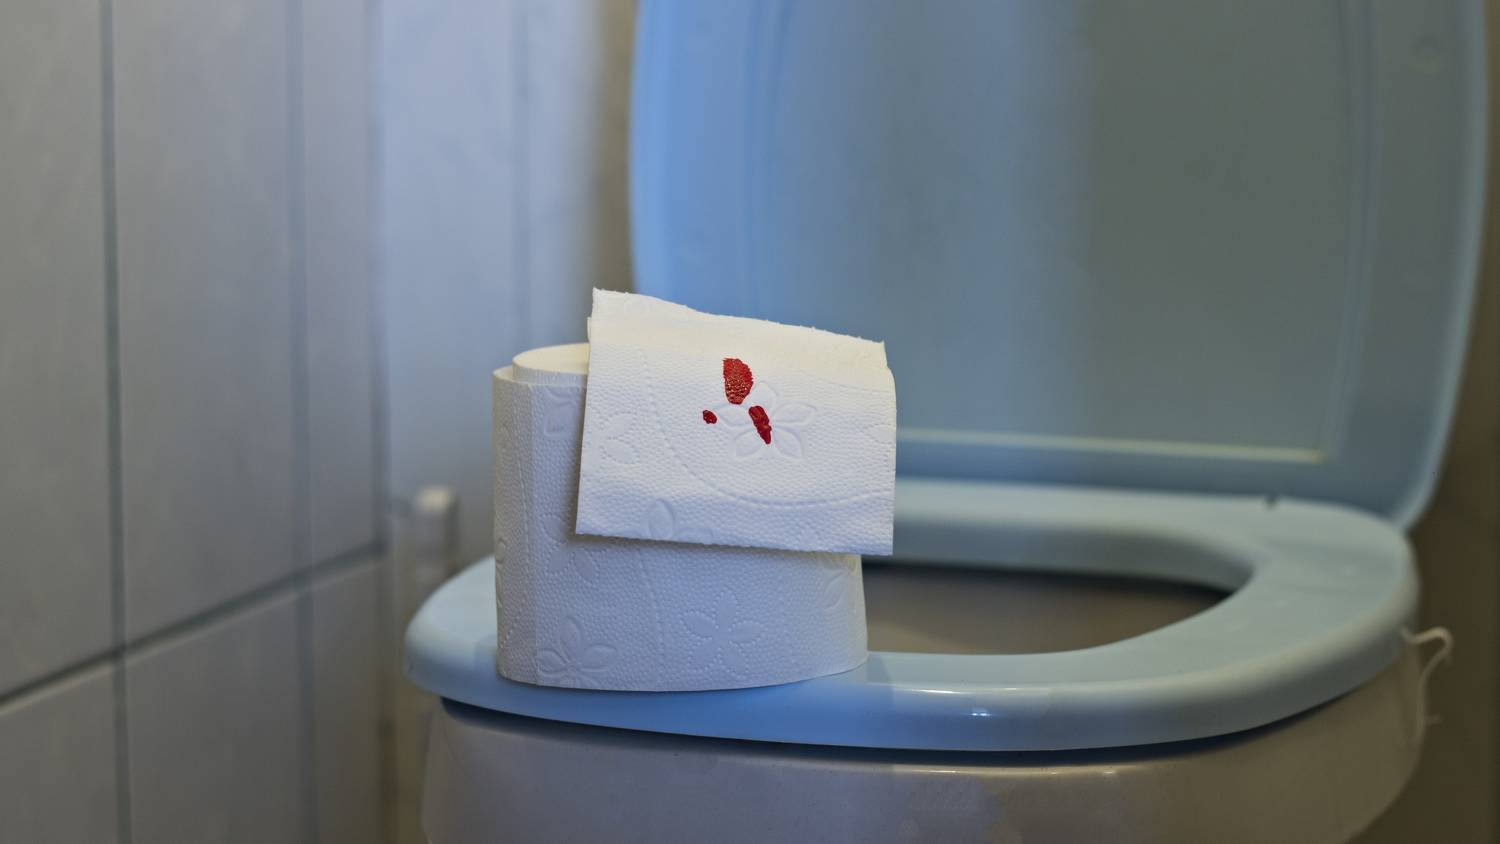 Кровь на туалетной бумаге после вытирания